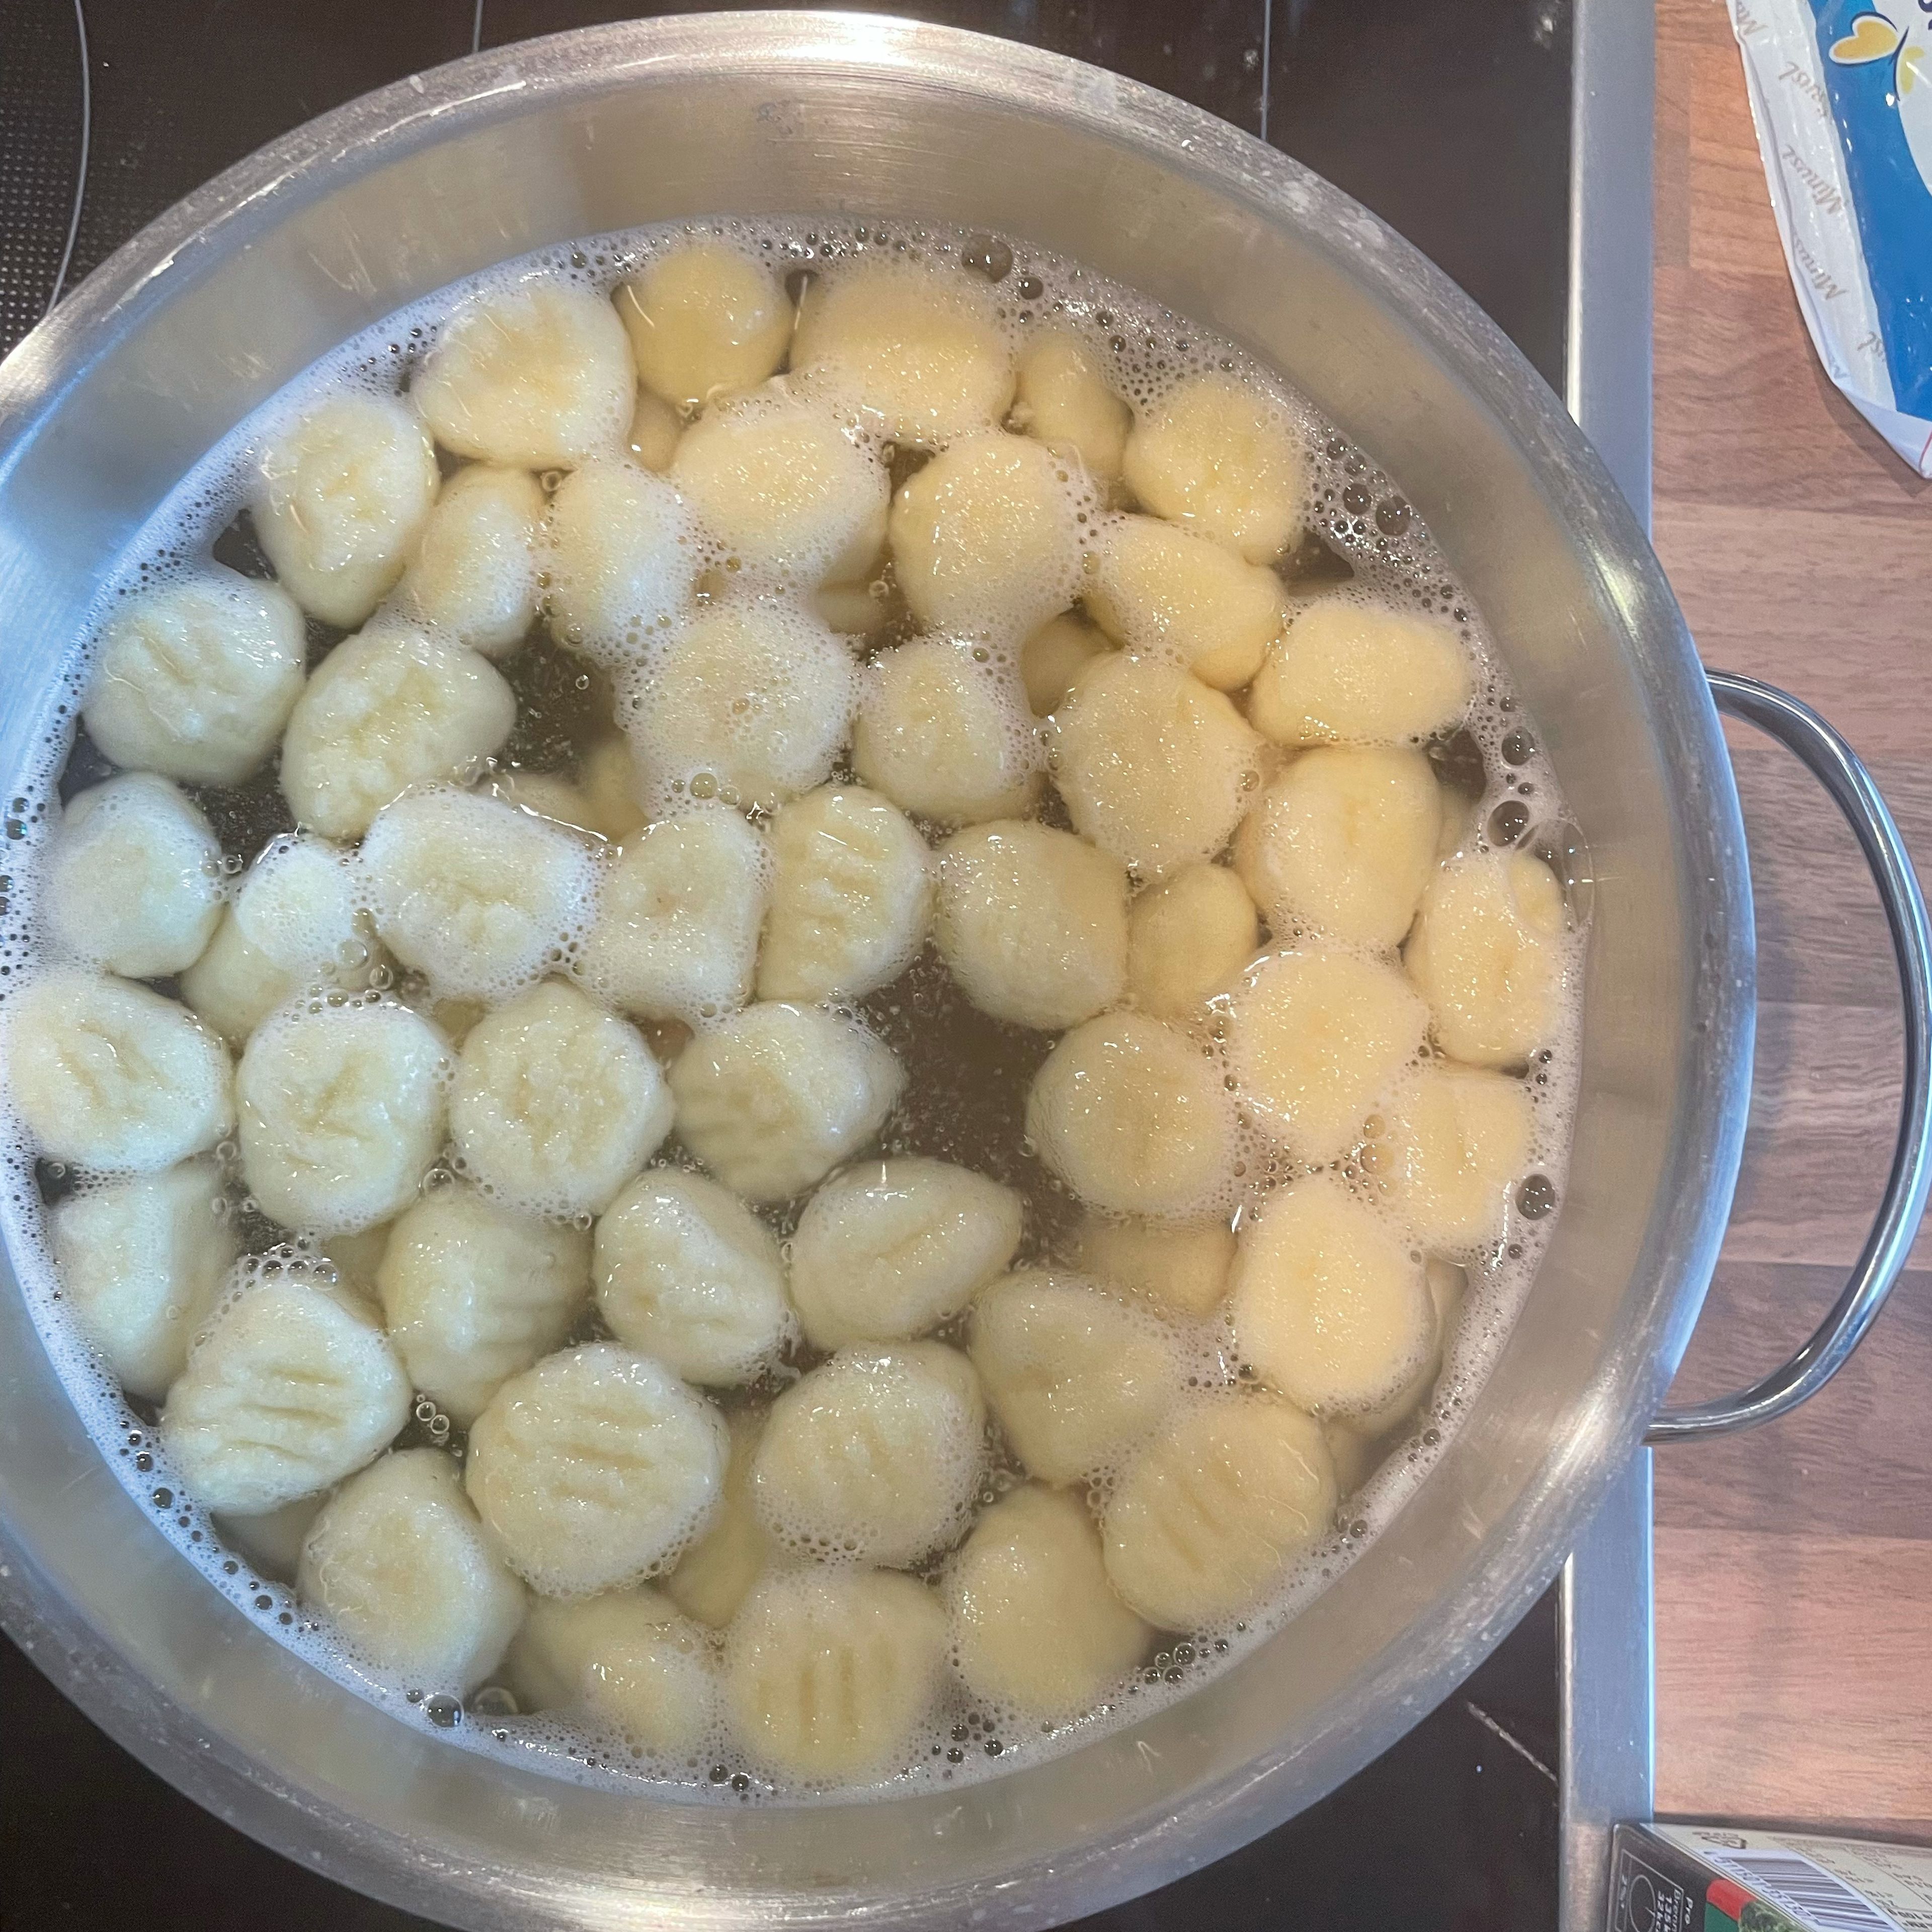 Gnocchi nach Packungsanweisung kochen, Backofen auf 180 Grad vorheizen